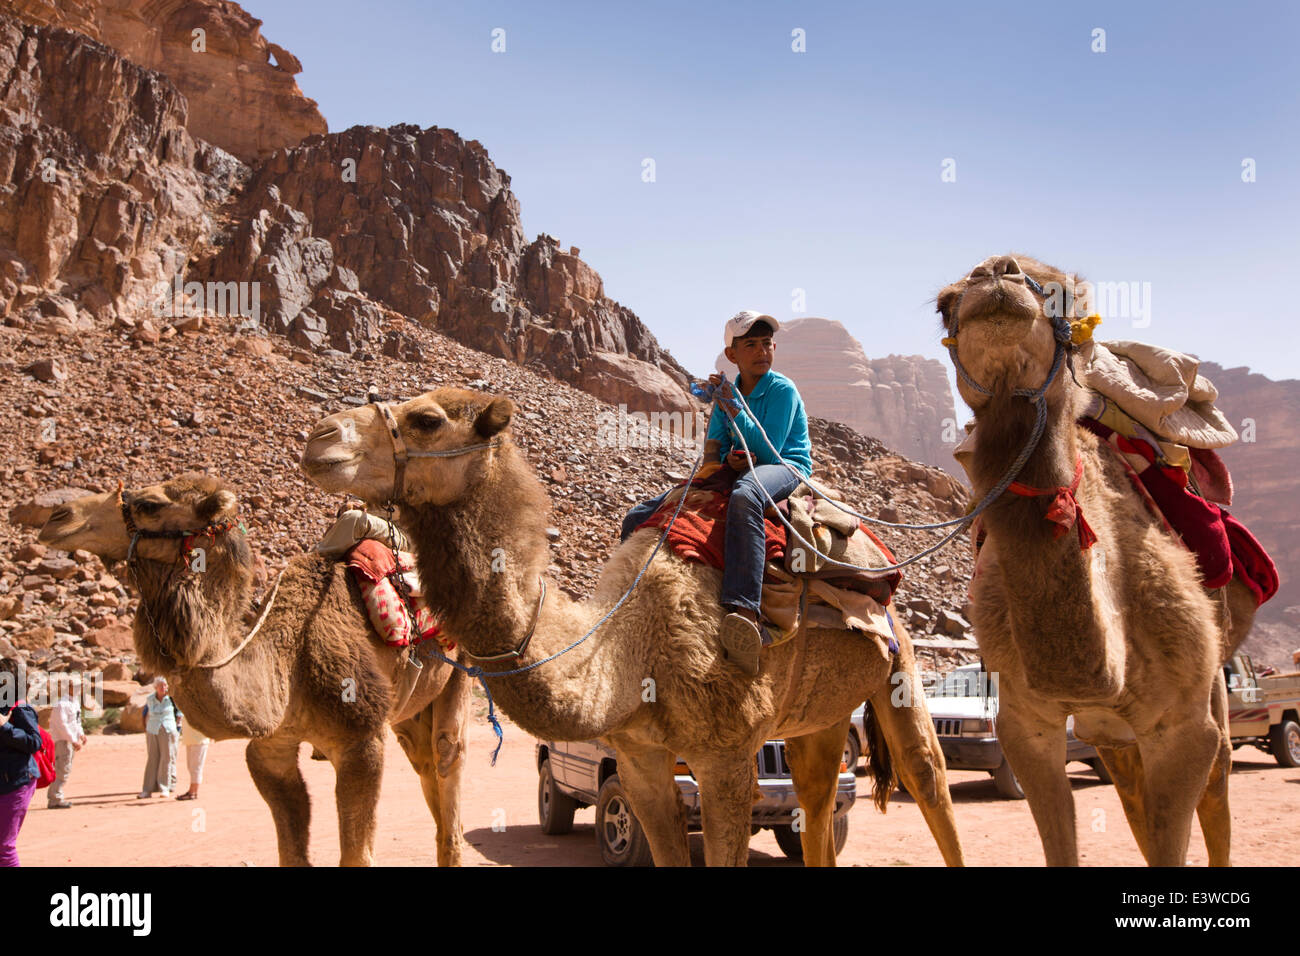 Giordania, Wadi Rum, giovane ragazzo sui cammelli in attesa di dare ai turisti la marcia ad acqua dolce primavera nel deserto giordano Foto Stock